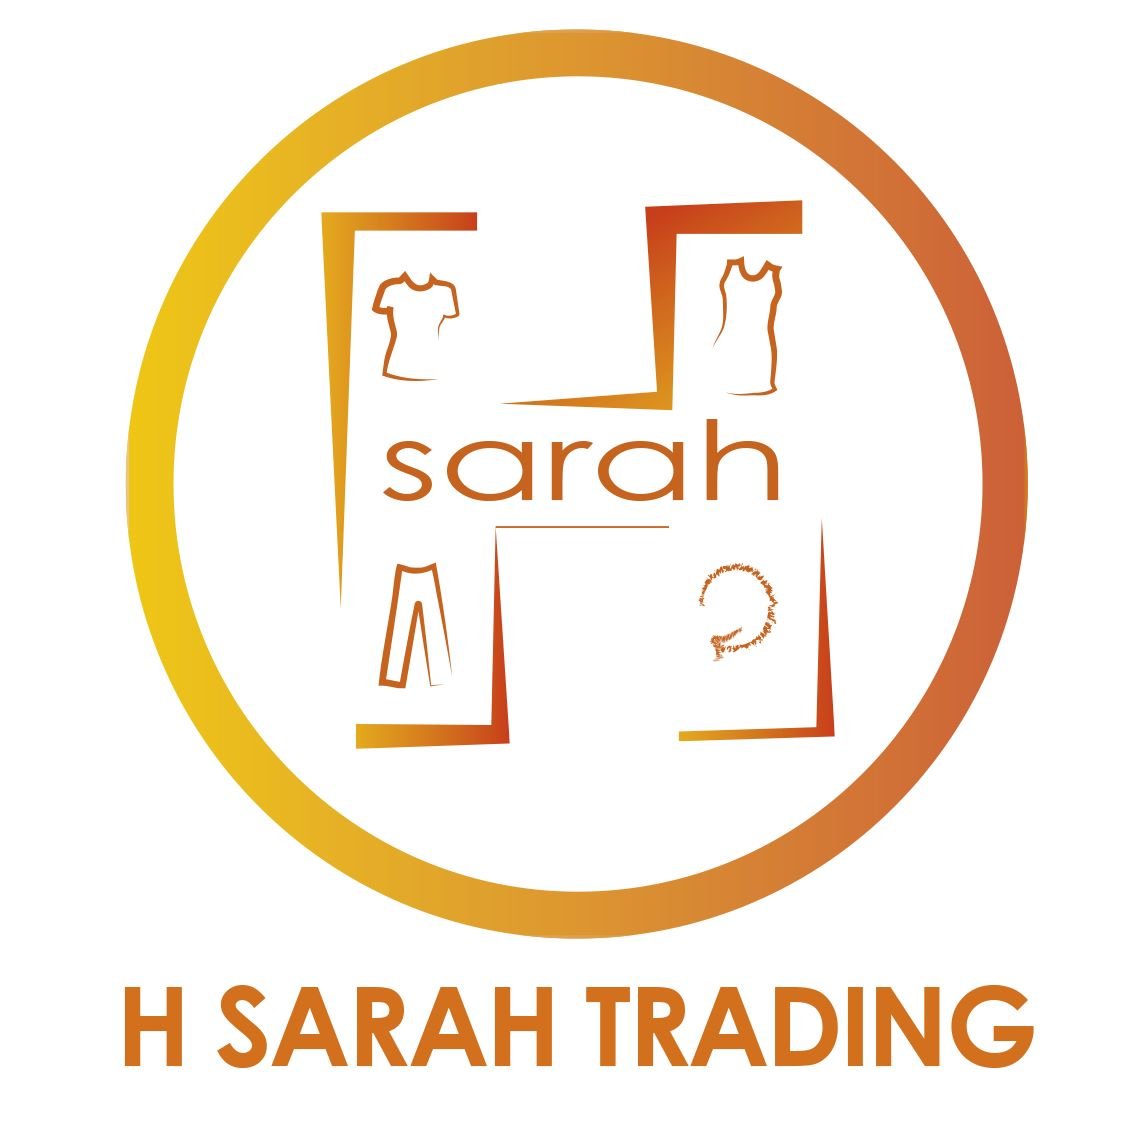 H Sarah Trading